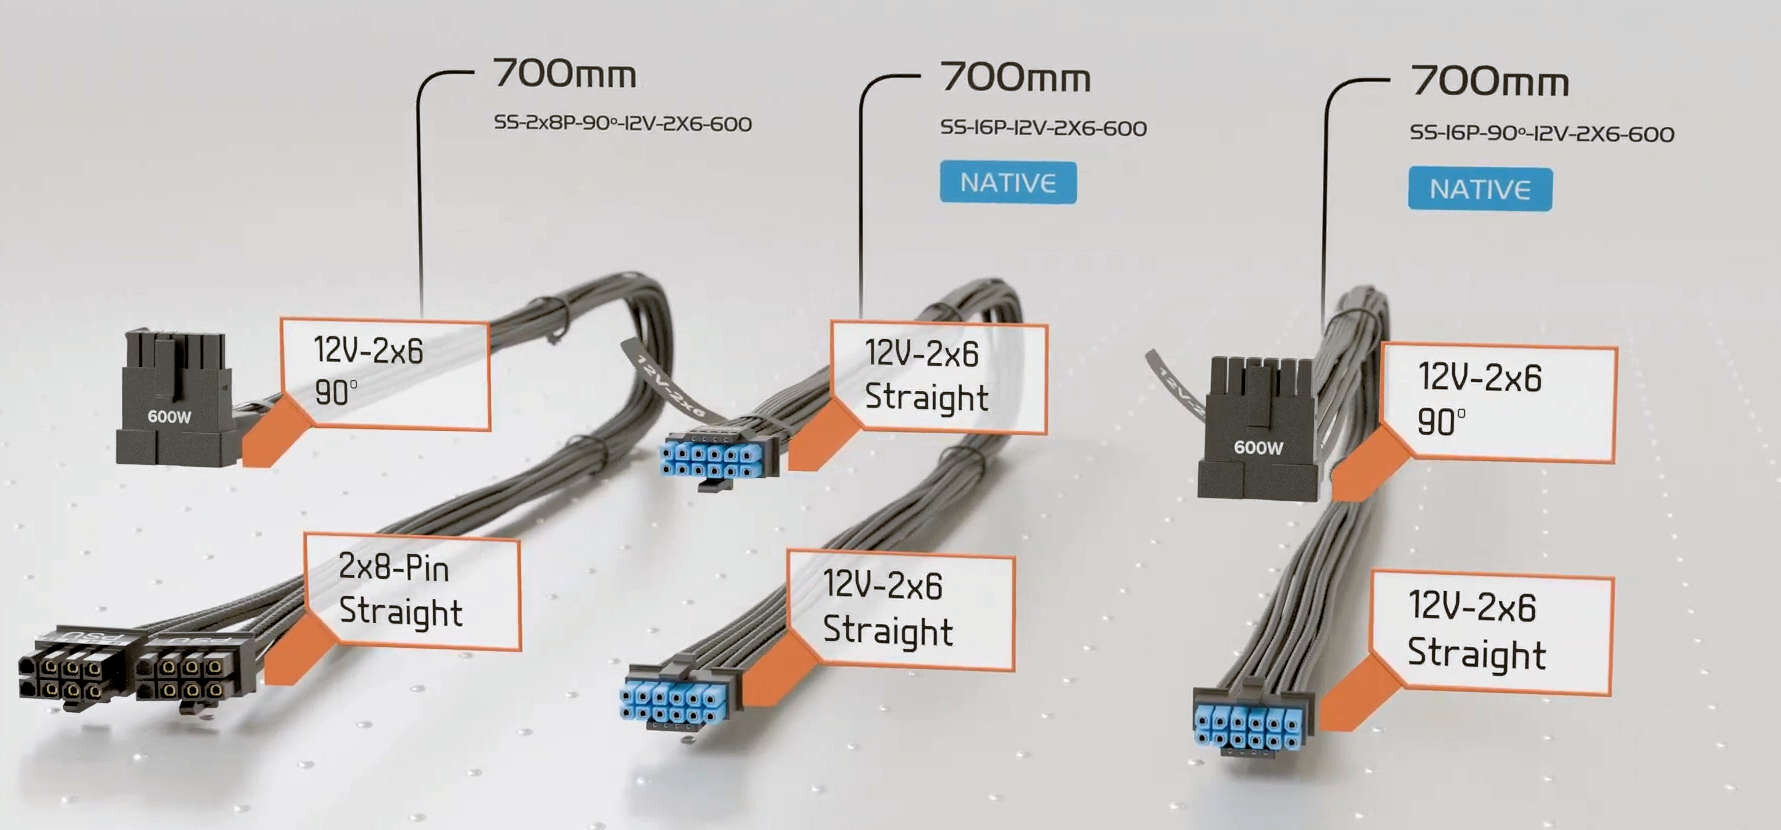 Seasonic anunció los cables de alimentación 12V-2x6